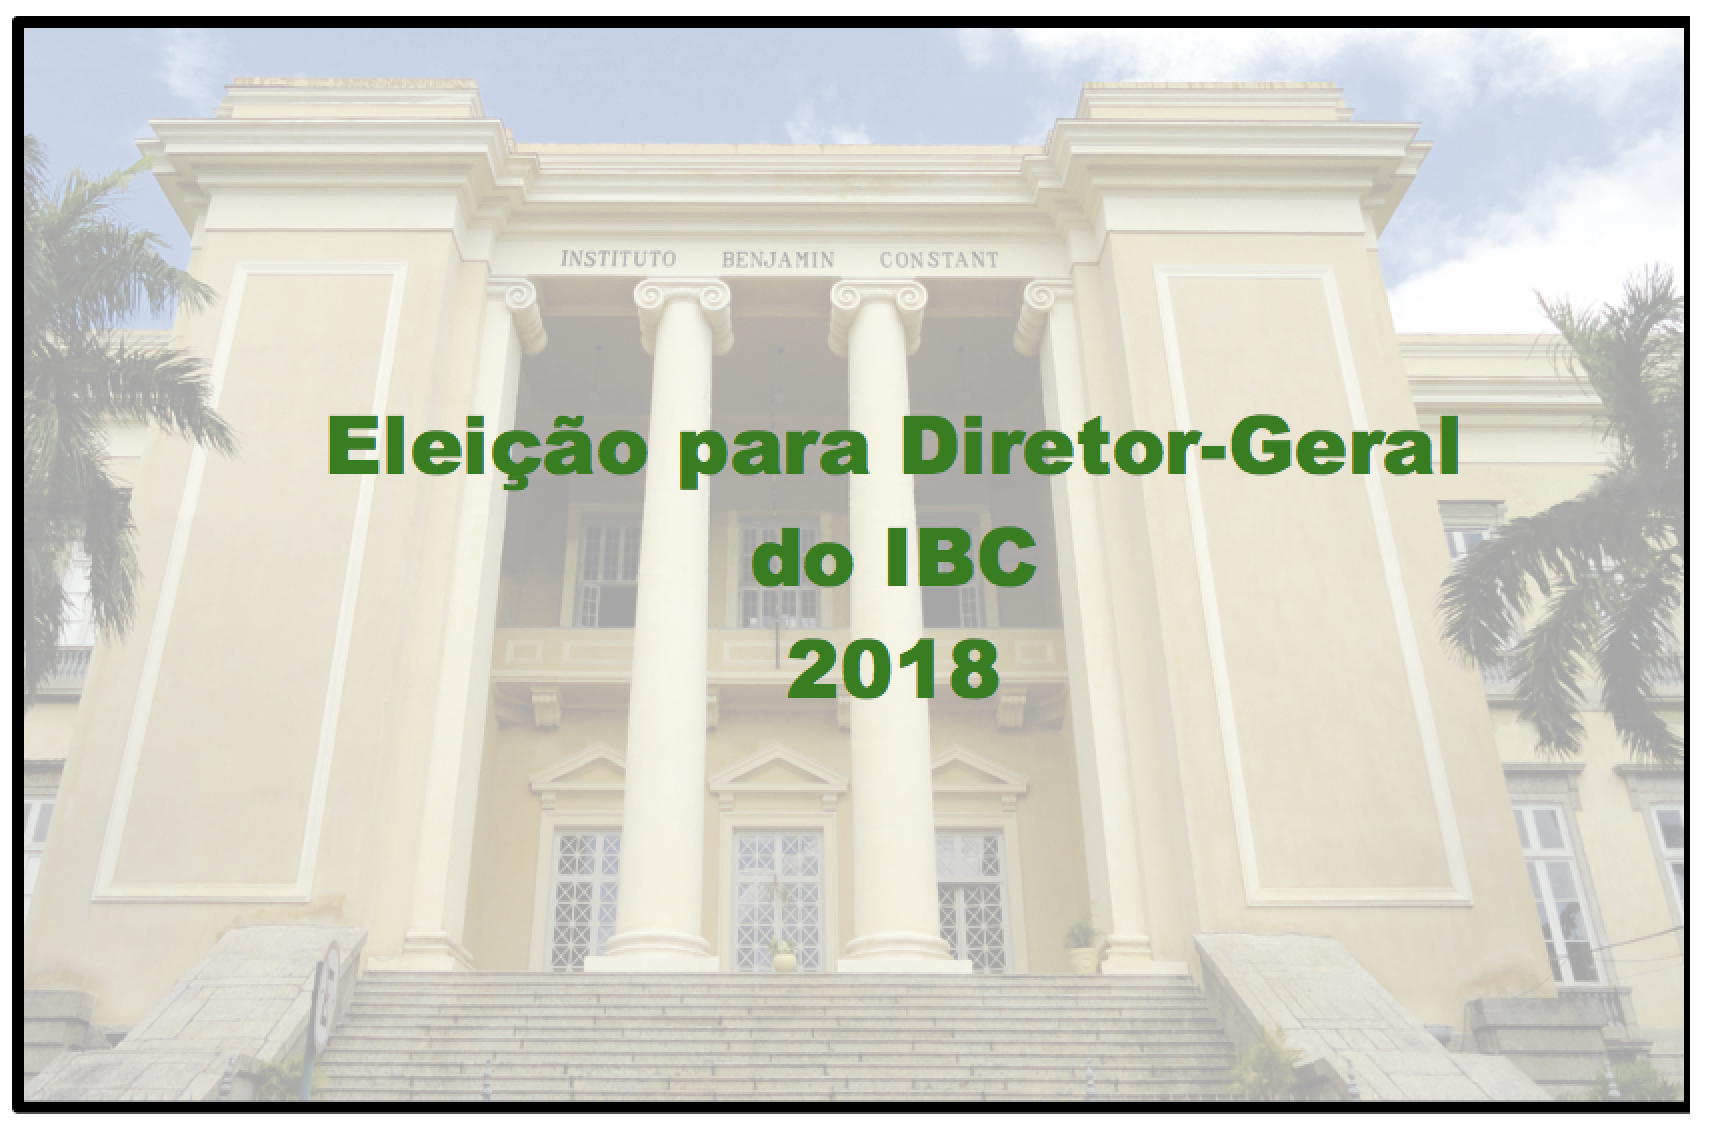 Descrição da foto: imagem em marca d'água da fachada externa do IBC com o seguinte texto sobreposto, em letras verde-escuras: Eleição para diretor-geral do IBC 2018.